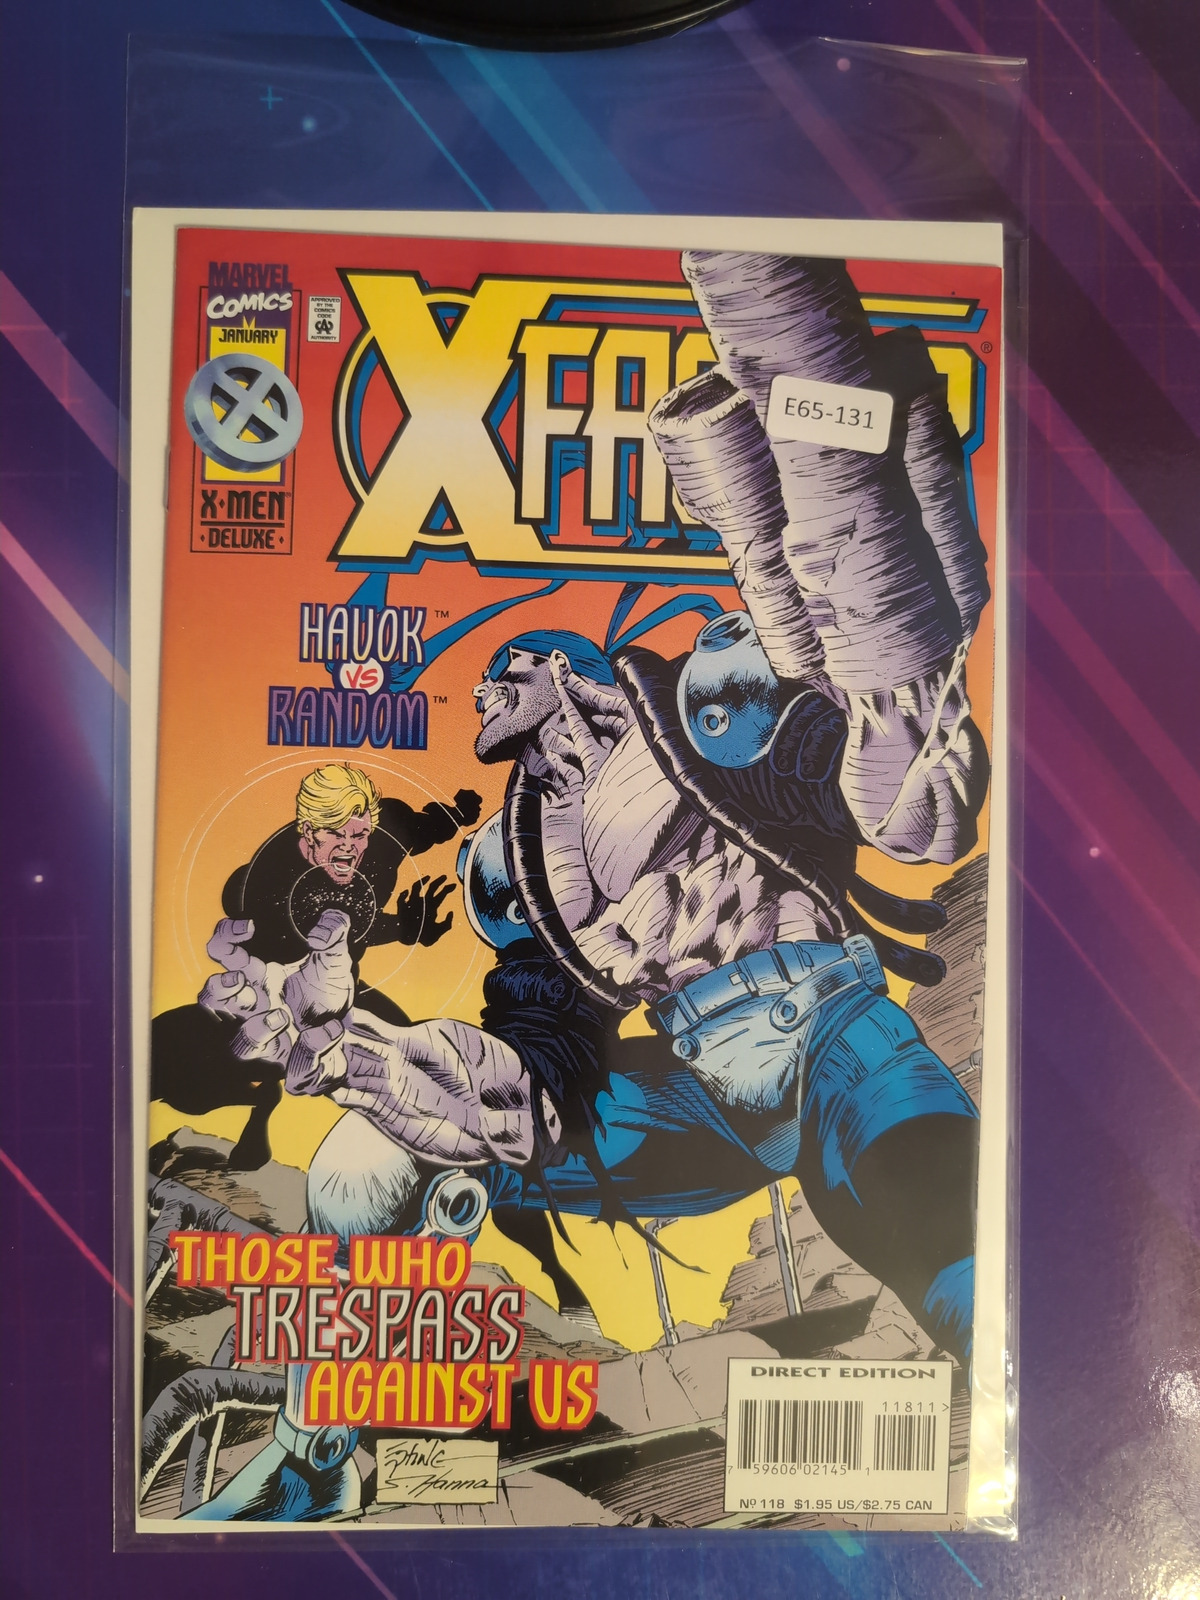 X-FACTOR #118 VOL. 1 HIGH GRADE MARVEL COMIC BOOK E65-131